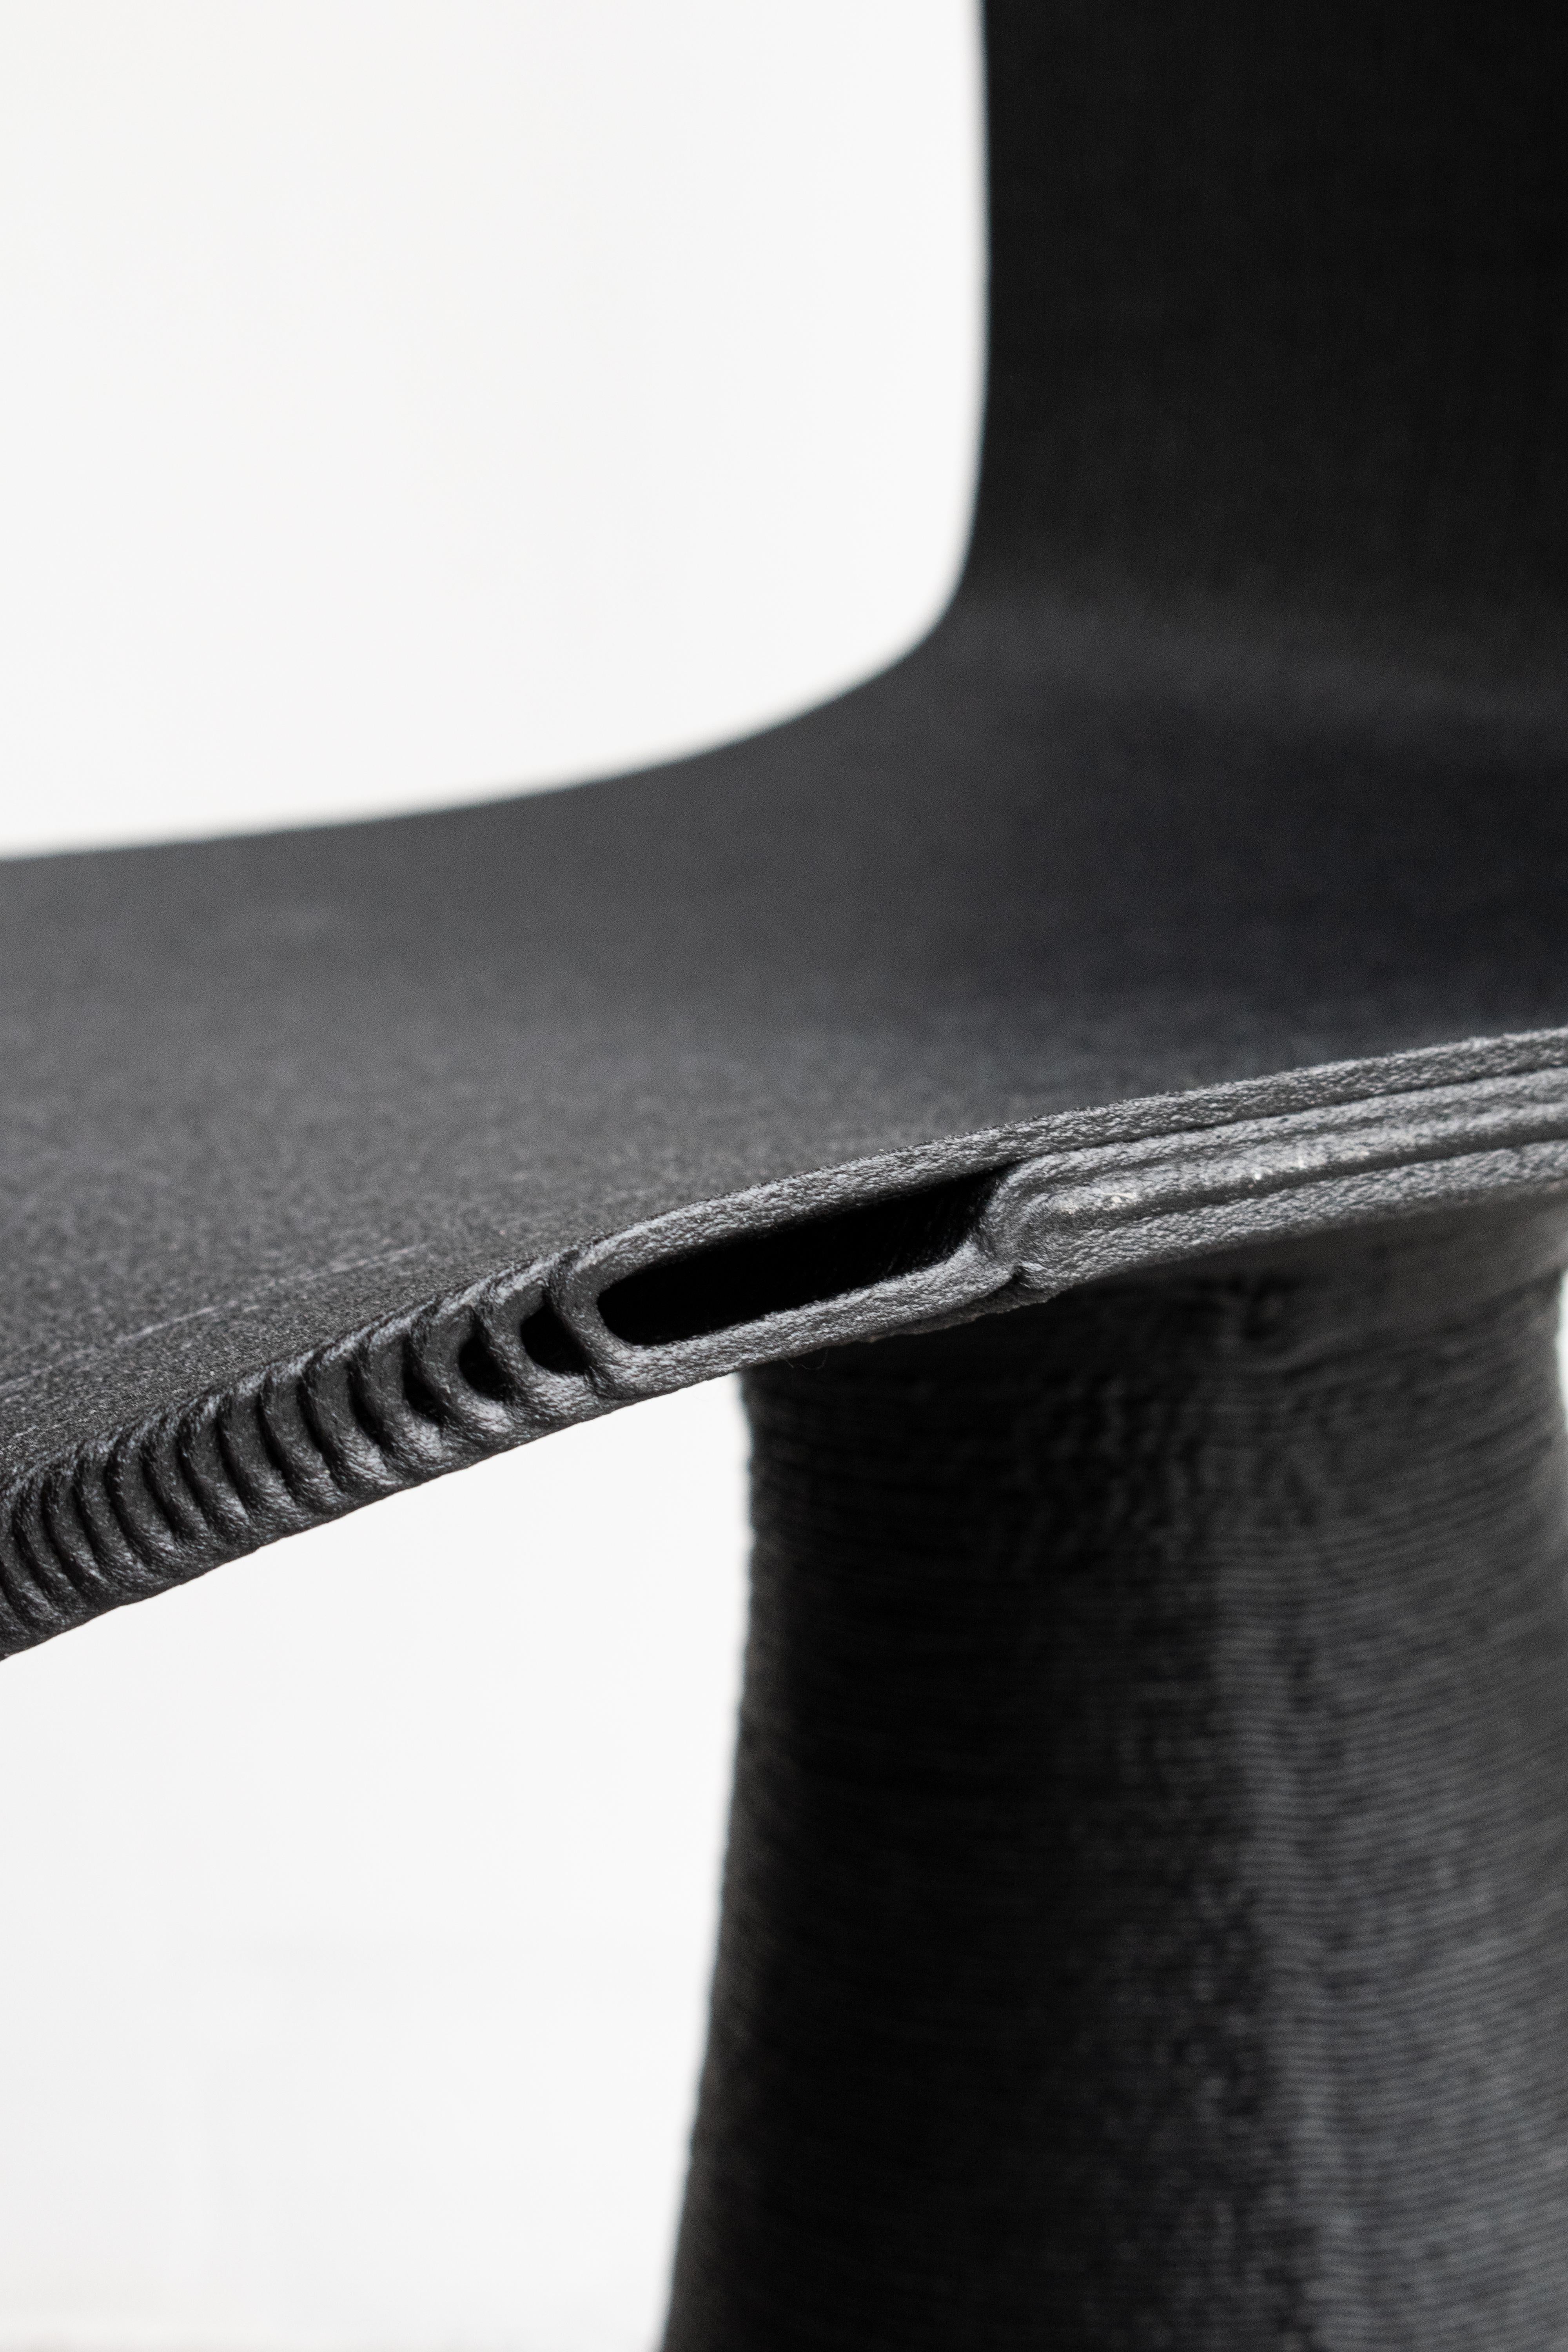 SoHo Stuhl

Hightech-Fertigung mit menschlicher Note

Der Soho Stuhl repräsentiert symbolisch alle Werte der Marke Elli. Klare Linien, ästhetische Verweise auf die Historizität des italienischen Designs, aber mit einer innovativen Berufung, die